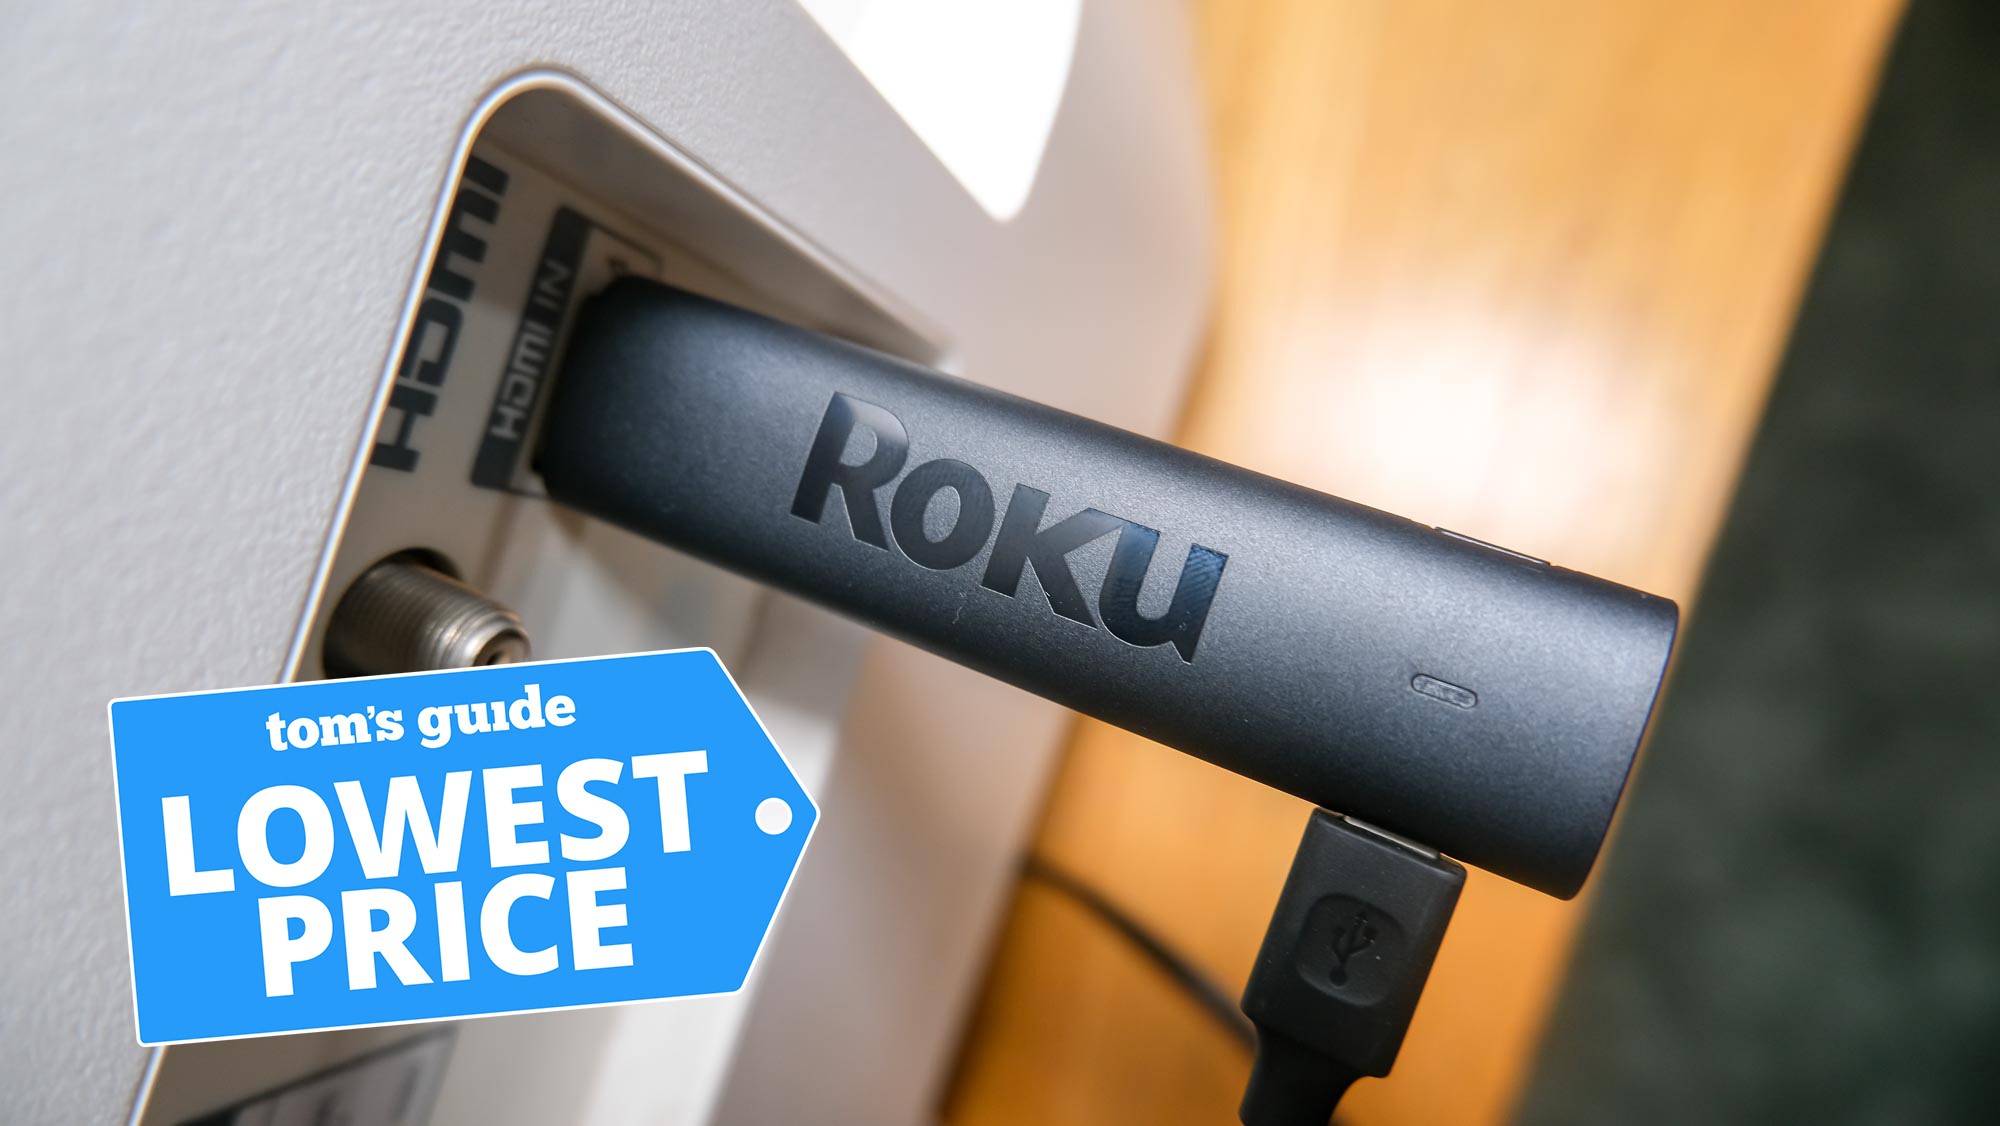 Roku Streaming Stick 4K ir pievienots HDMI portam ar Tom's Guide Lowest Price grafiku augšpusē